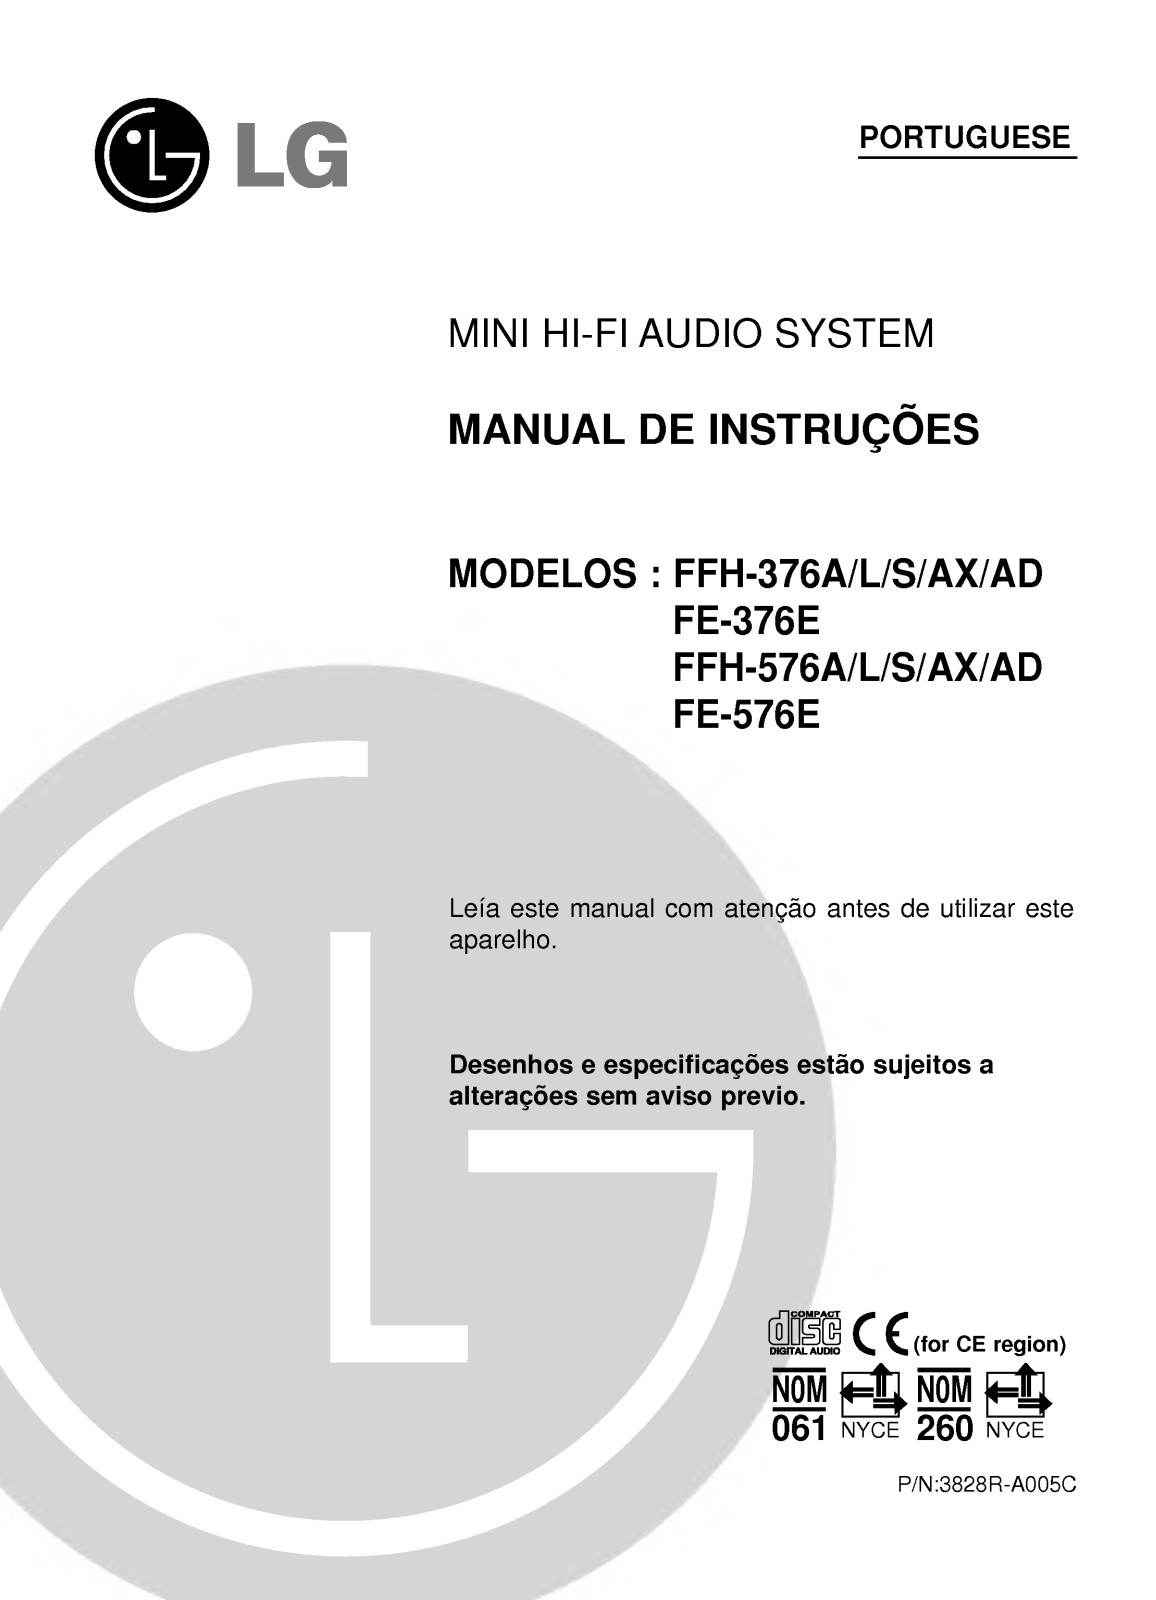 Lg FFH-576A, FFH-576L, FFH-576S, FFH-576AX, FFH-576AD Instructions Manual